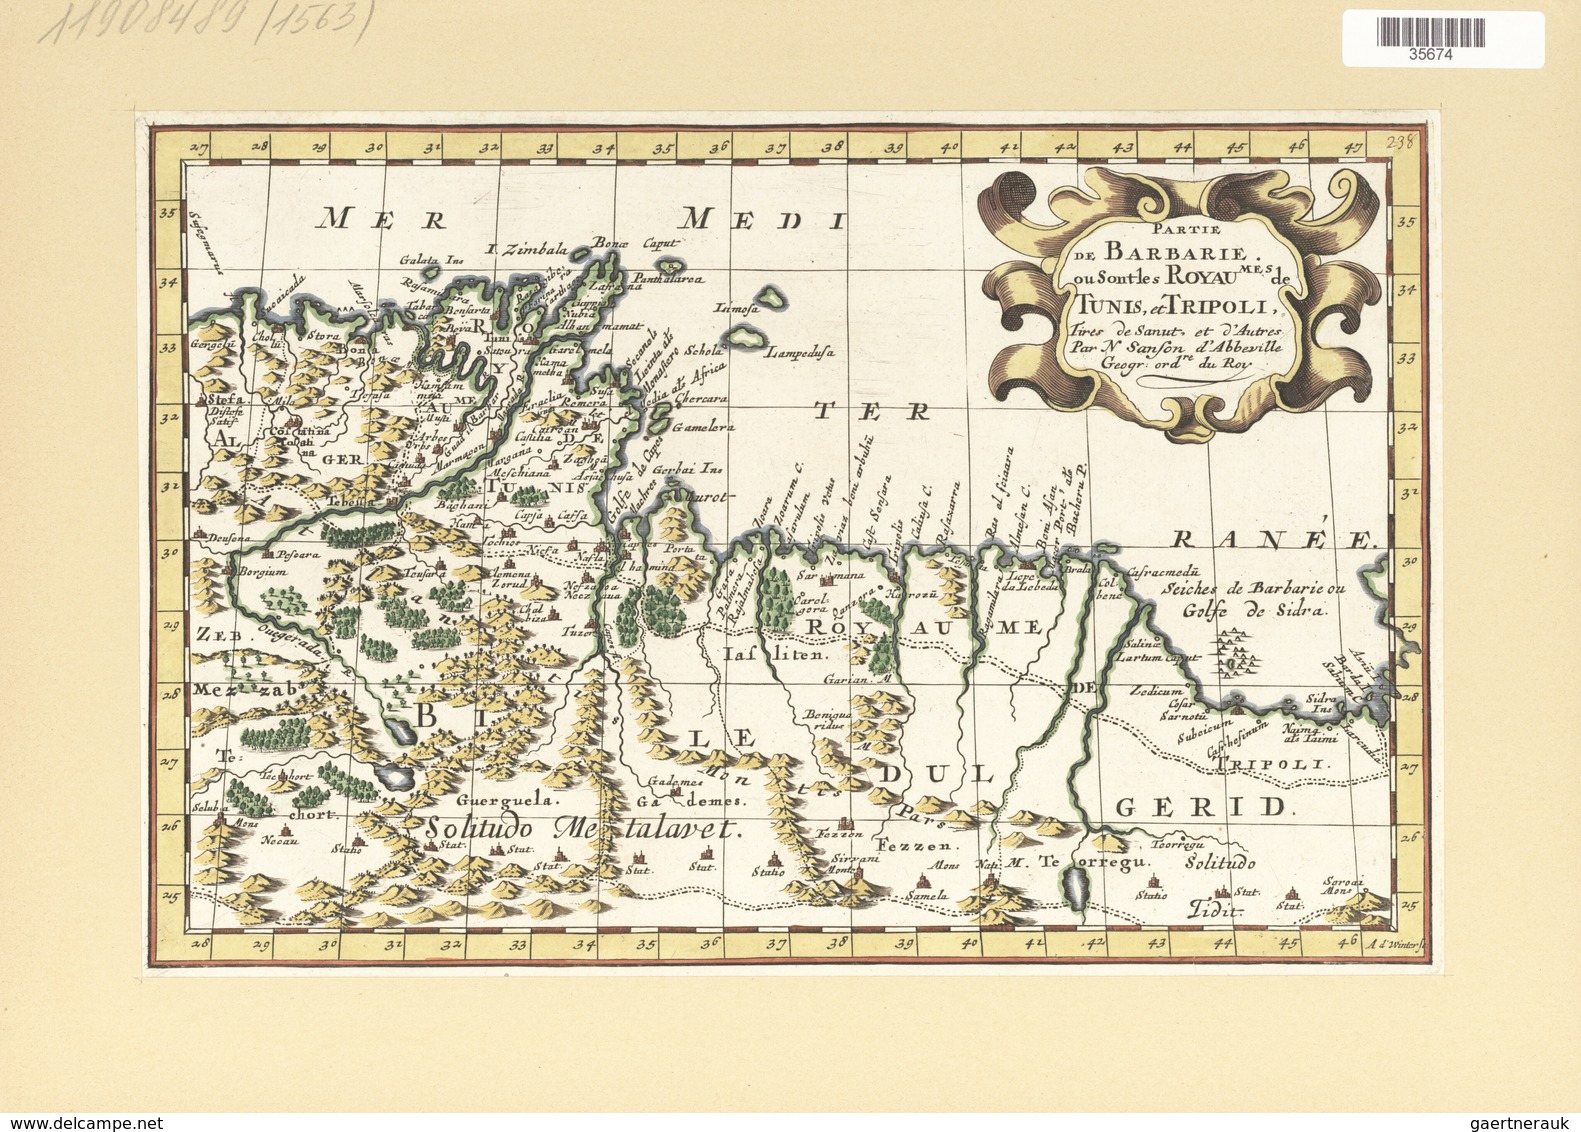 Landkarten Und Stiche: 1734. Partie De Barbarie, Ou Sont Les Royaumes De Tunis, Et Tripoli; By A.d W - Géographie